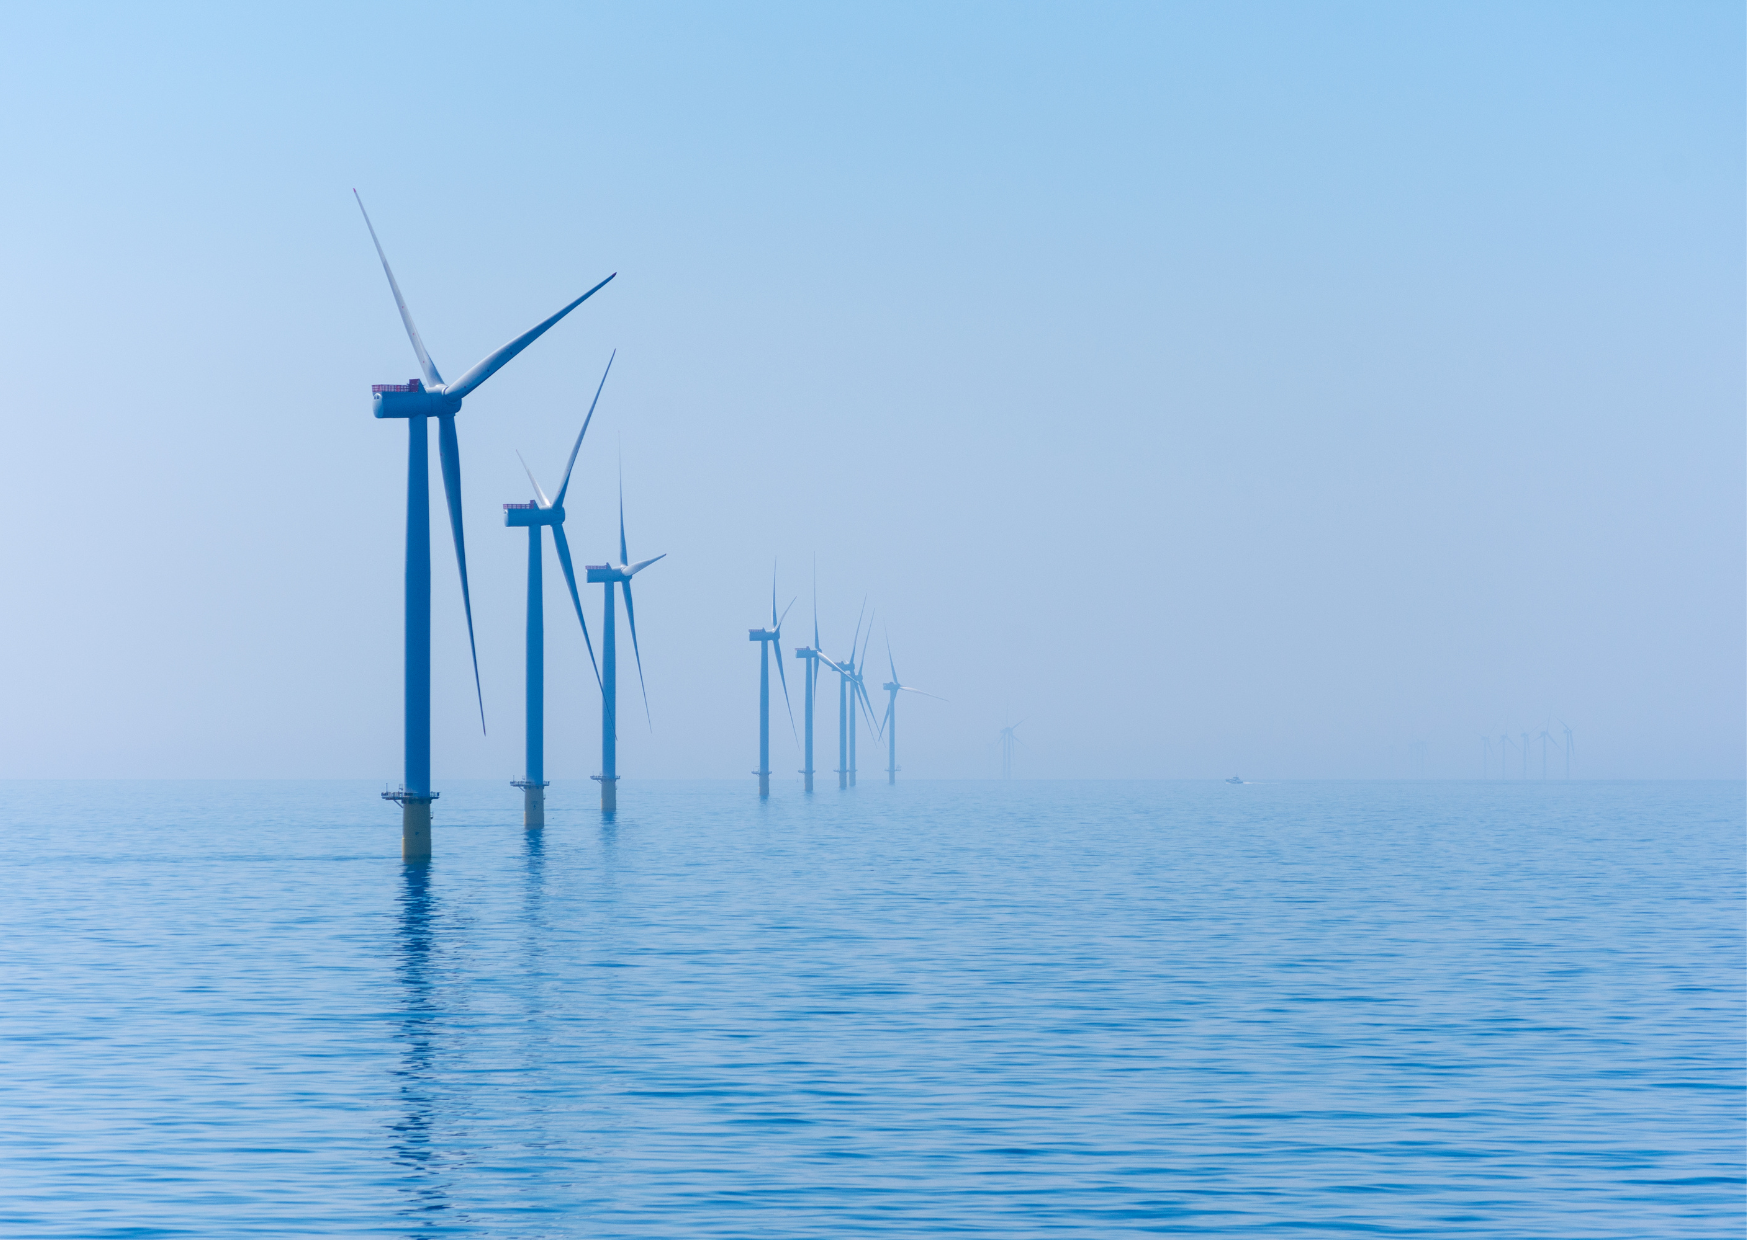 Konkurencyjność europejskiej energetyki wiatrowej – raport Delloitte na zlecenie Europejskiej Platformy Technologii i Innowacji w zakresie Energii Wiatrowej